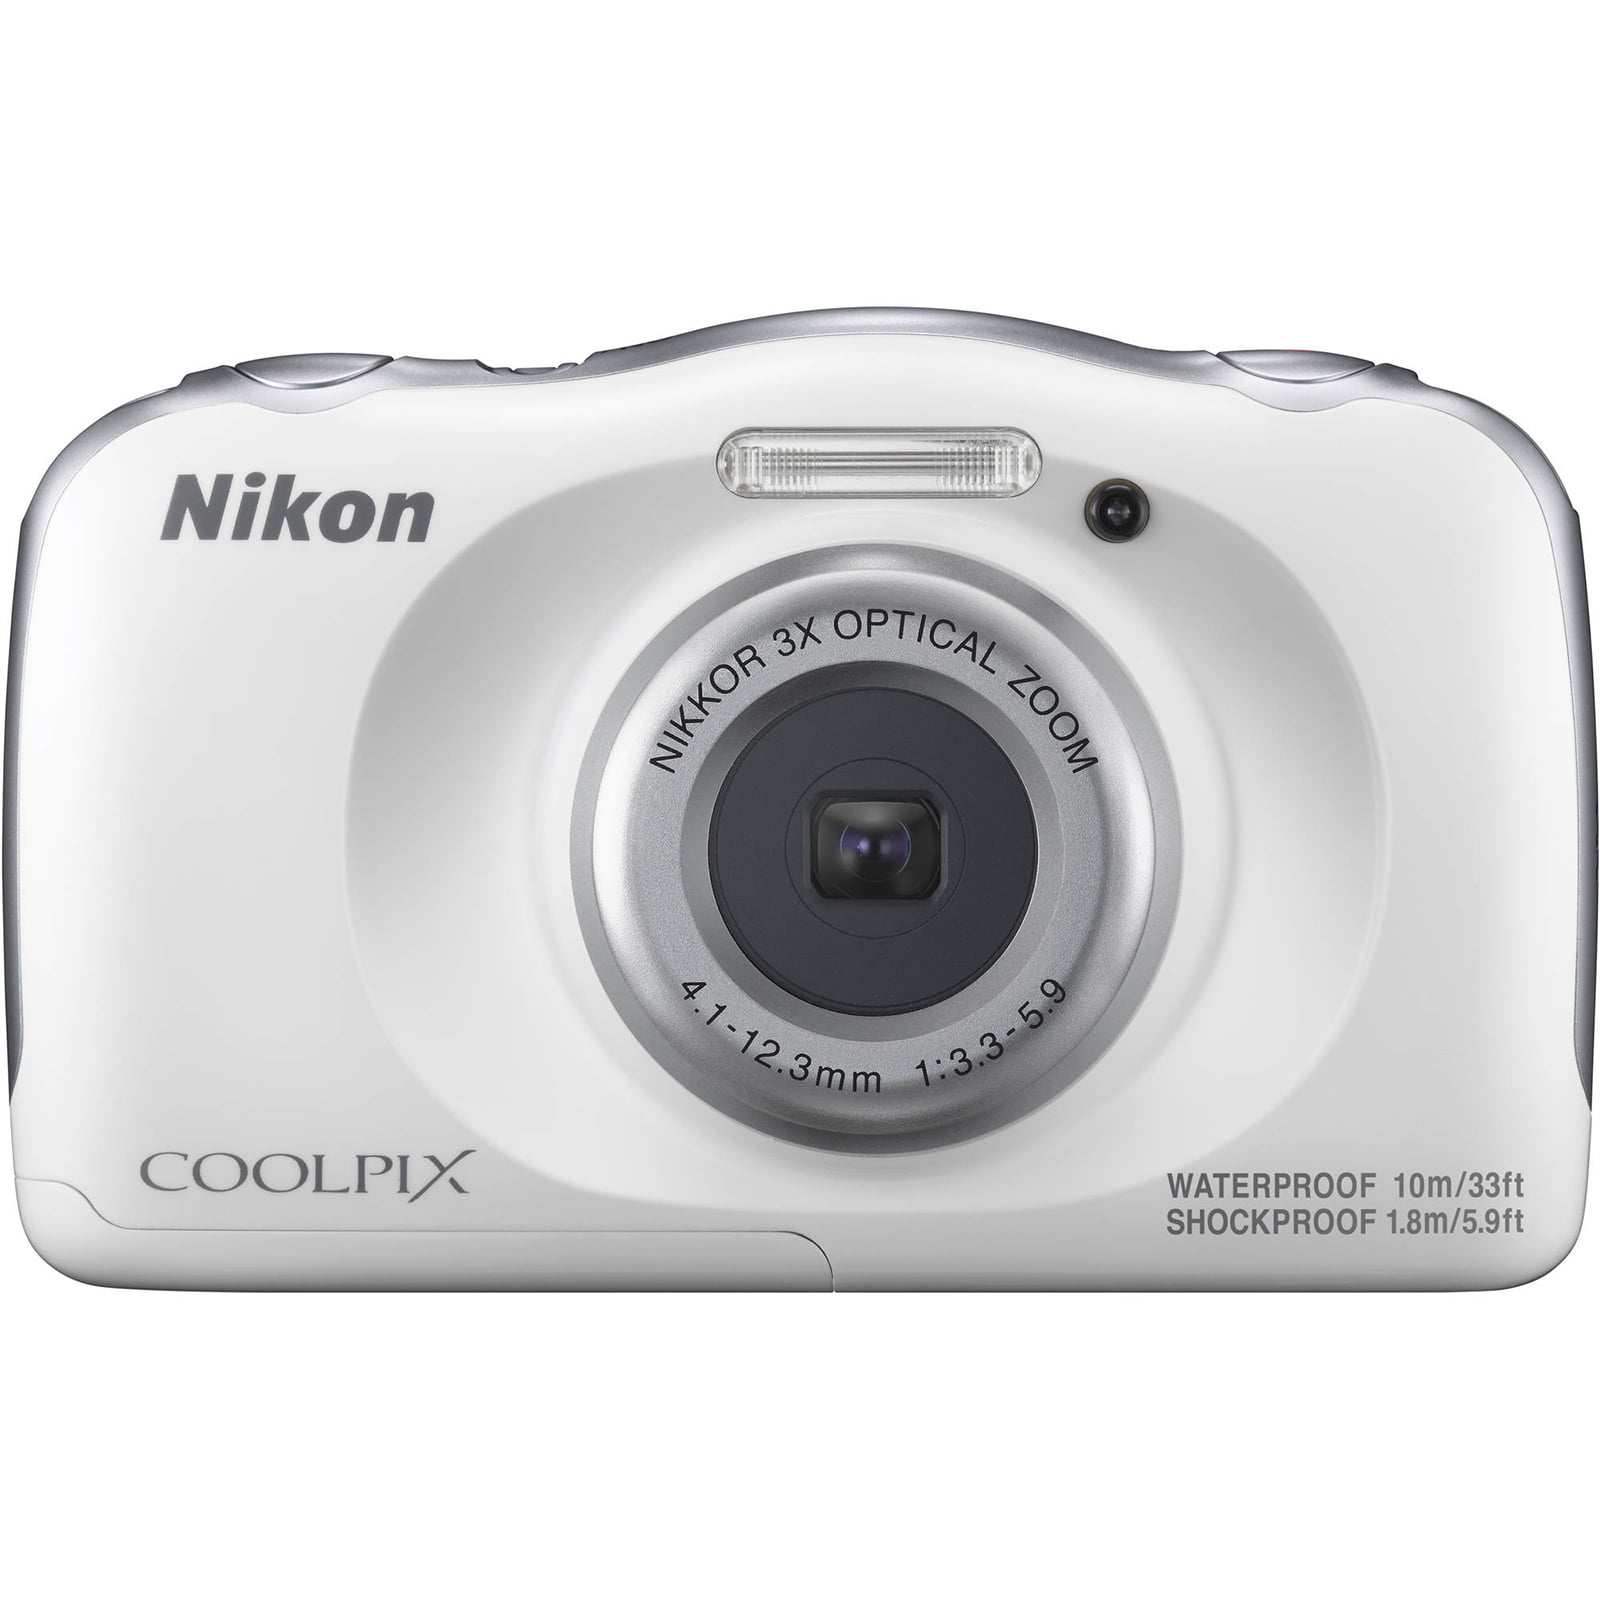 Nikon Coolpix W100 - digital camera - Walmart.com